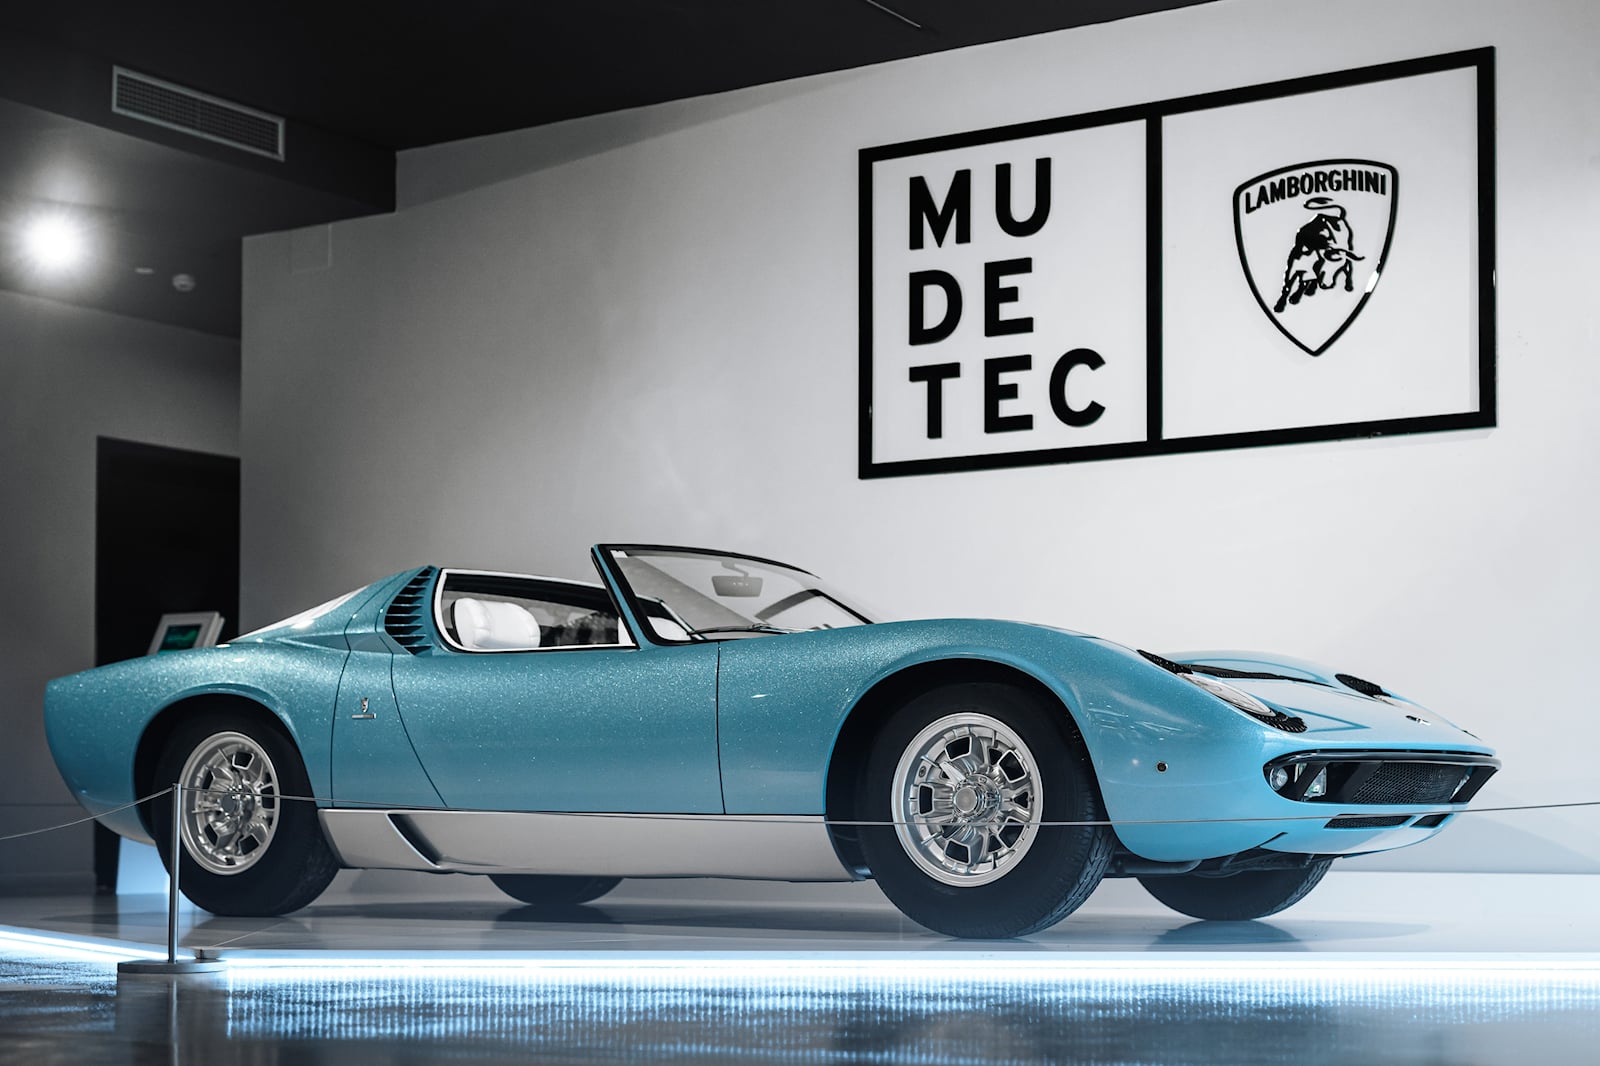 К счастью, Lamborghini вновь приобрела автомобиль в 2007 году и сразу же провел полную реставрацию, которая вернула ему первоначальный вид с этой ослепительно синей краской. Затем он был показан миру в 2008 году на конкурсе элегантности в Пеббл-Бич.